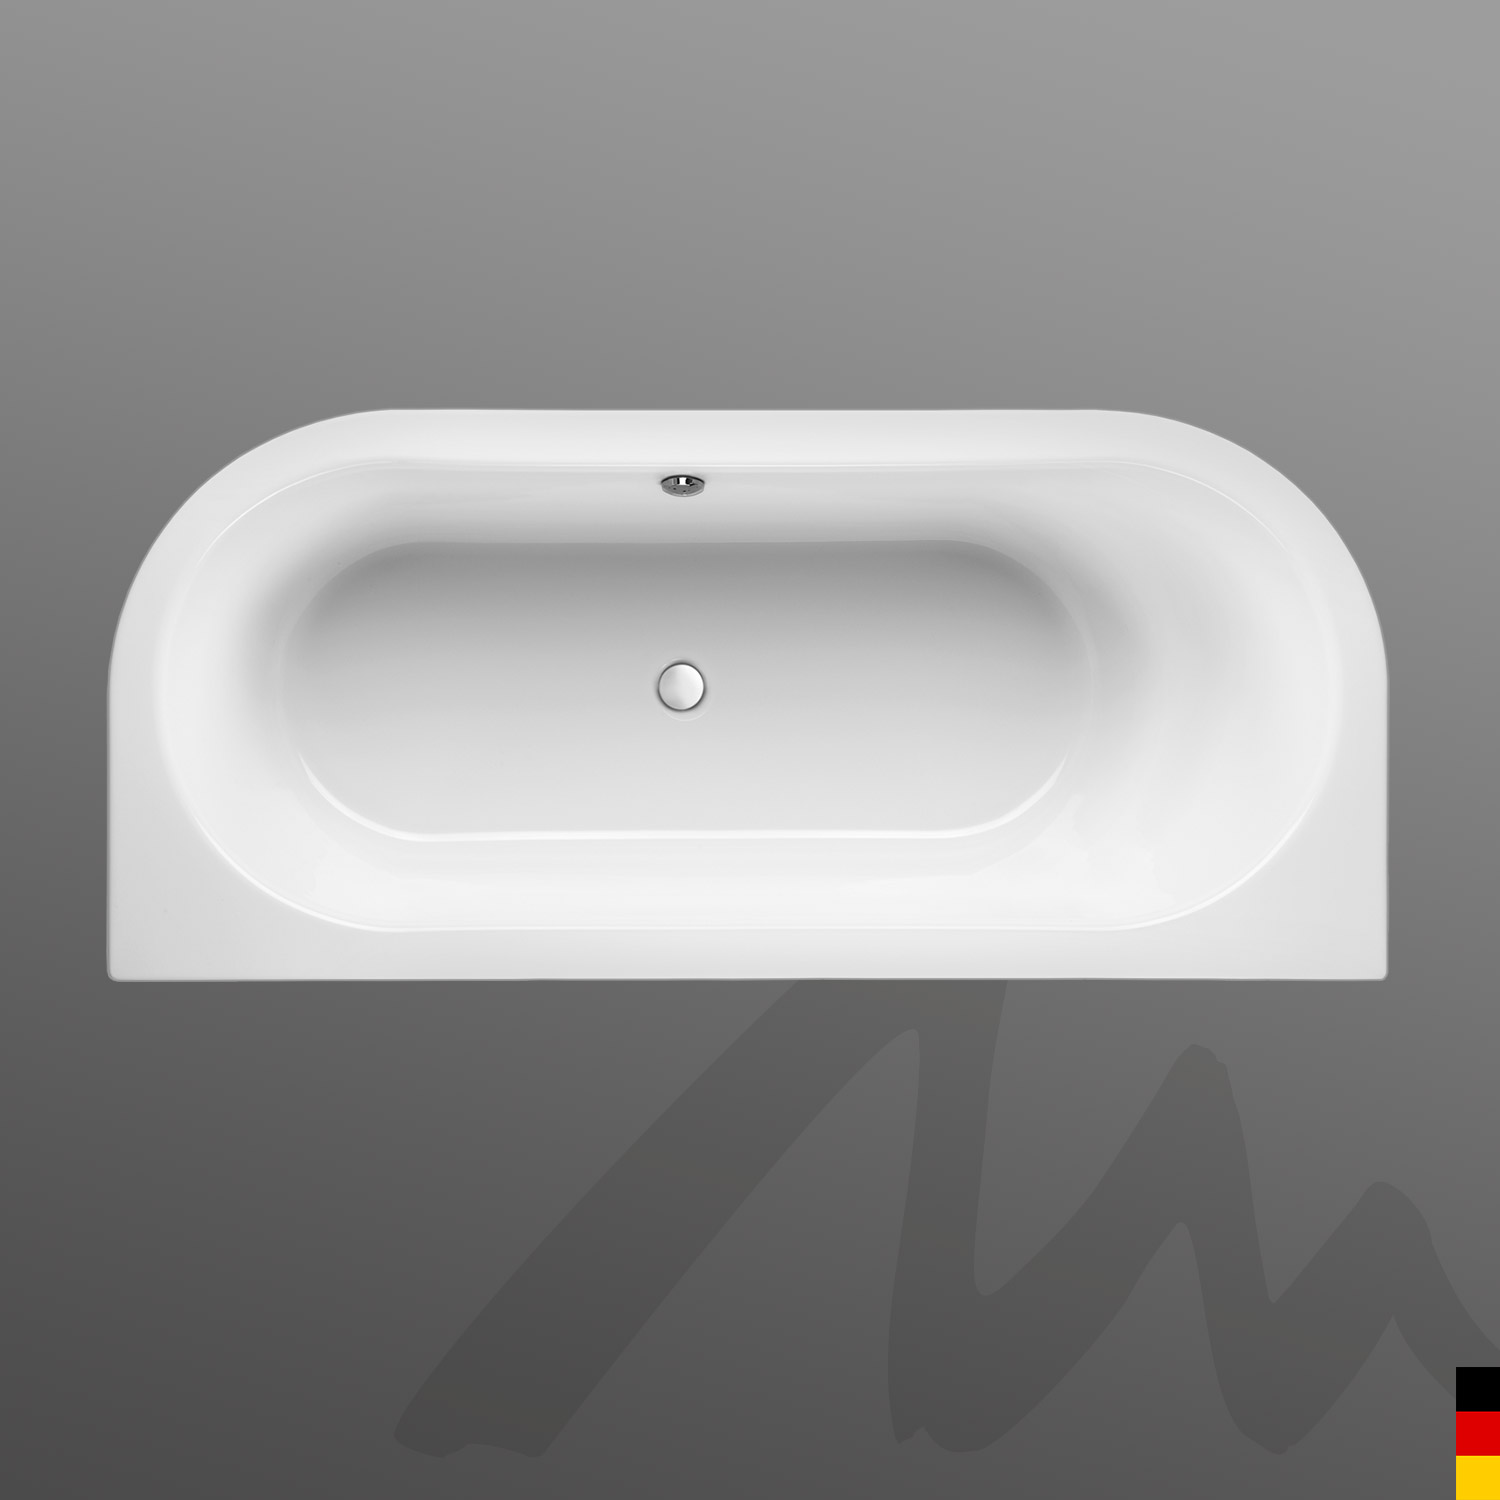 Mauersberger Badewanne Oval Primo 2 - 180/80 uno  180x80x45  Farbe:rein-weiß